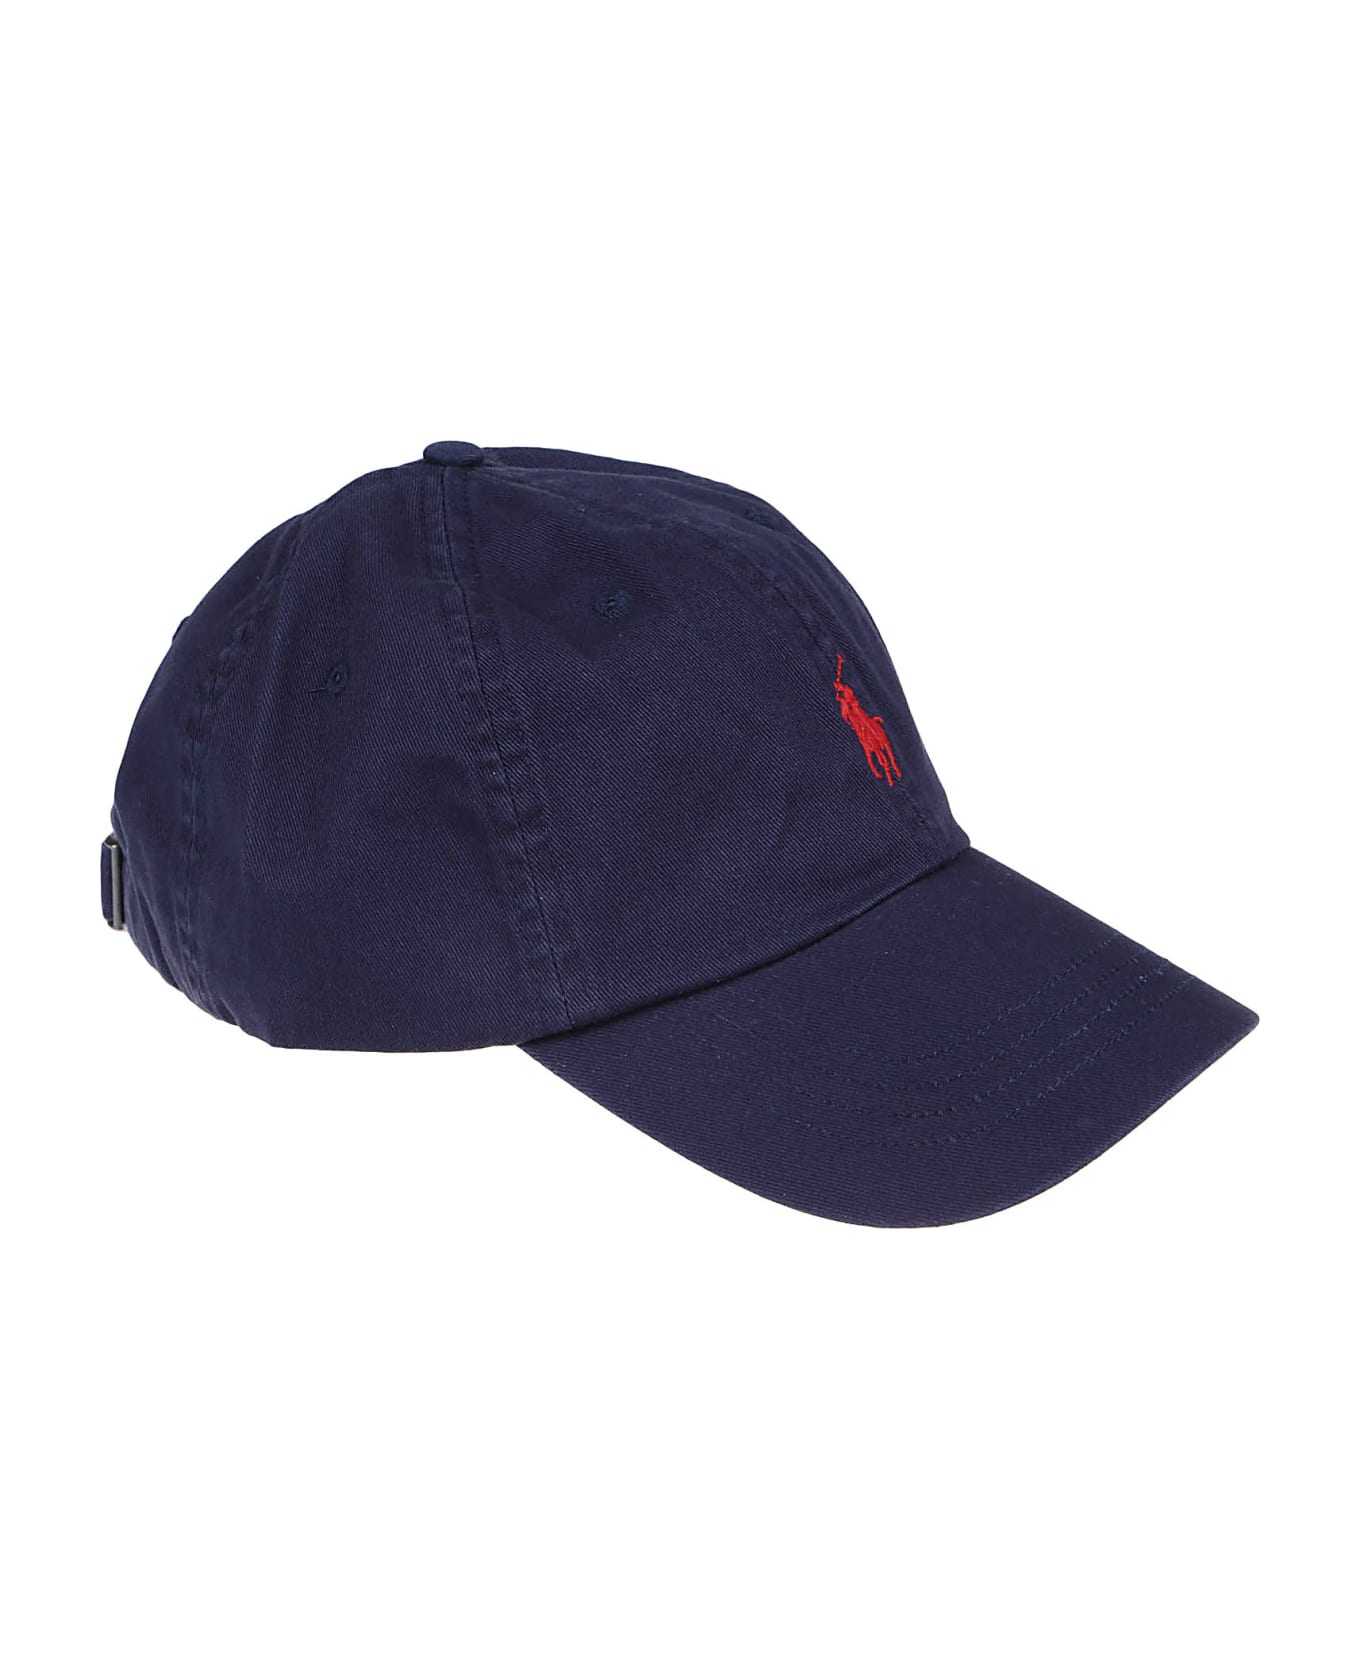 Polo Ralph Lauren Baseball Cap - Newport Navy/red